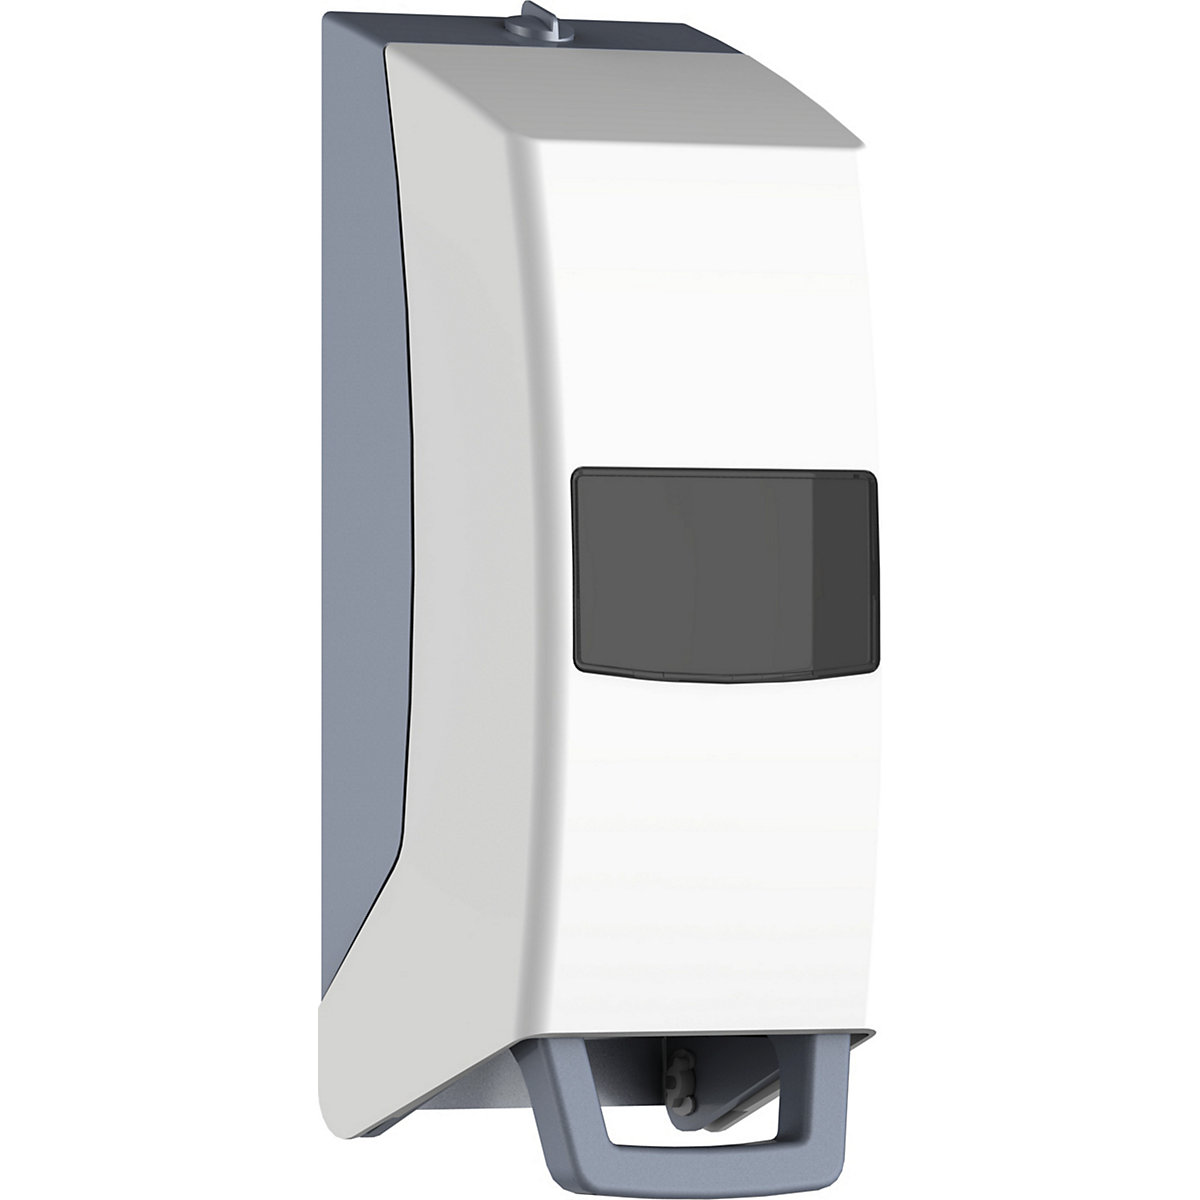 IndustrieLine Vario skin cream dispenser - CWS